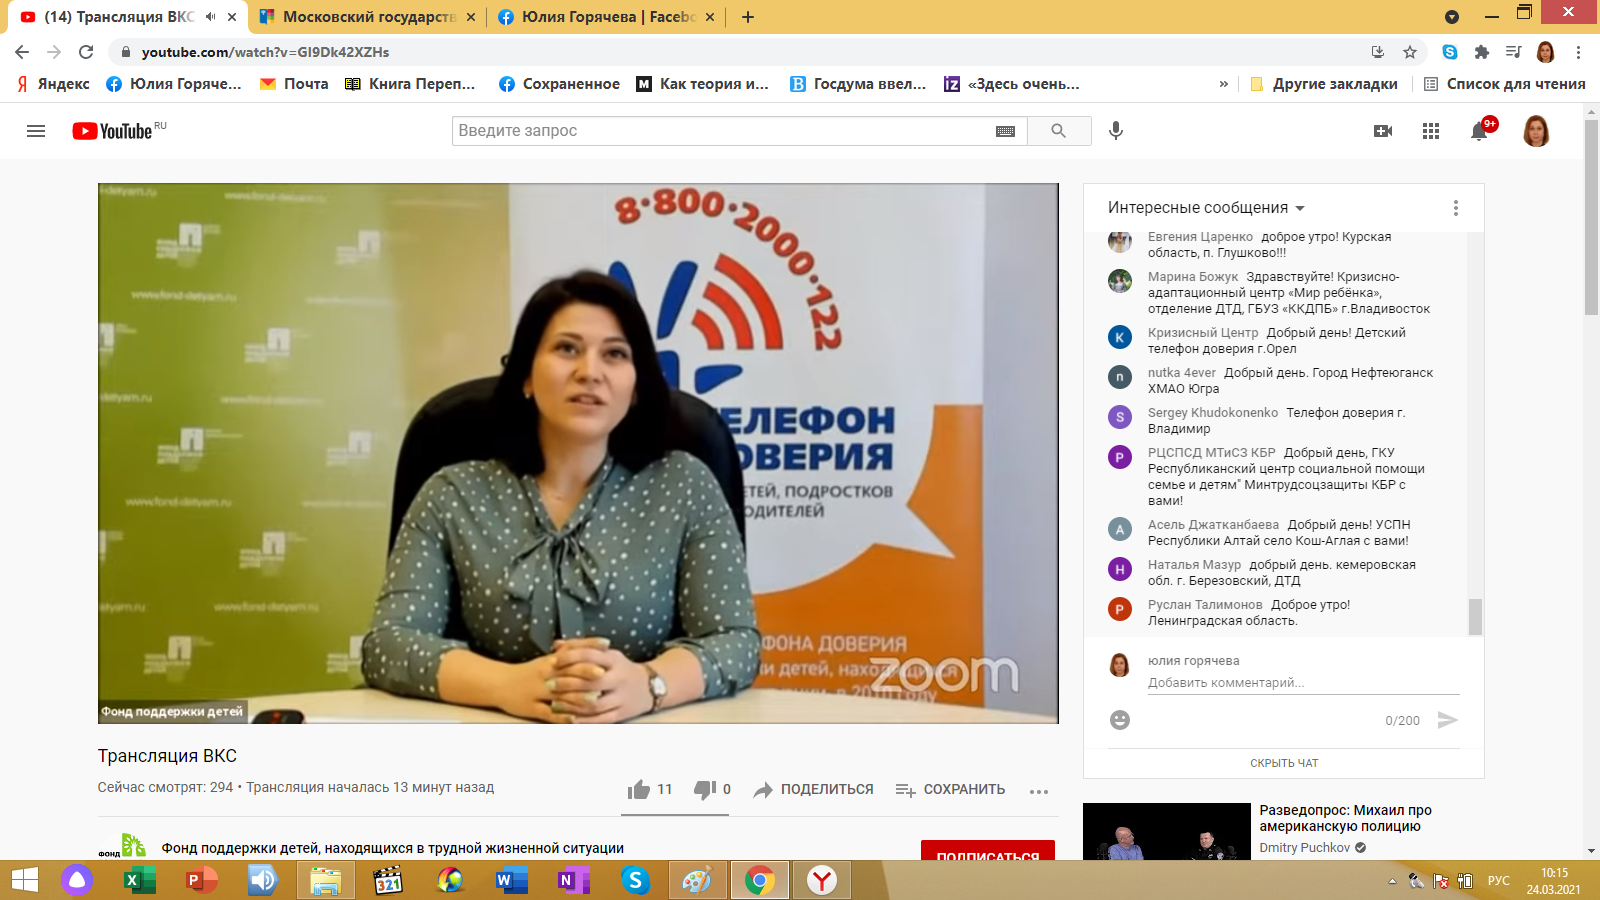 Анна Ермолаева представила на Всероссийском онлайн семинаре информационно-методический портал для специалистов Общероссийского детского телефона 